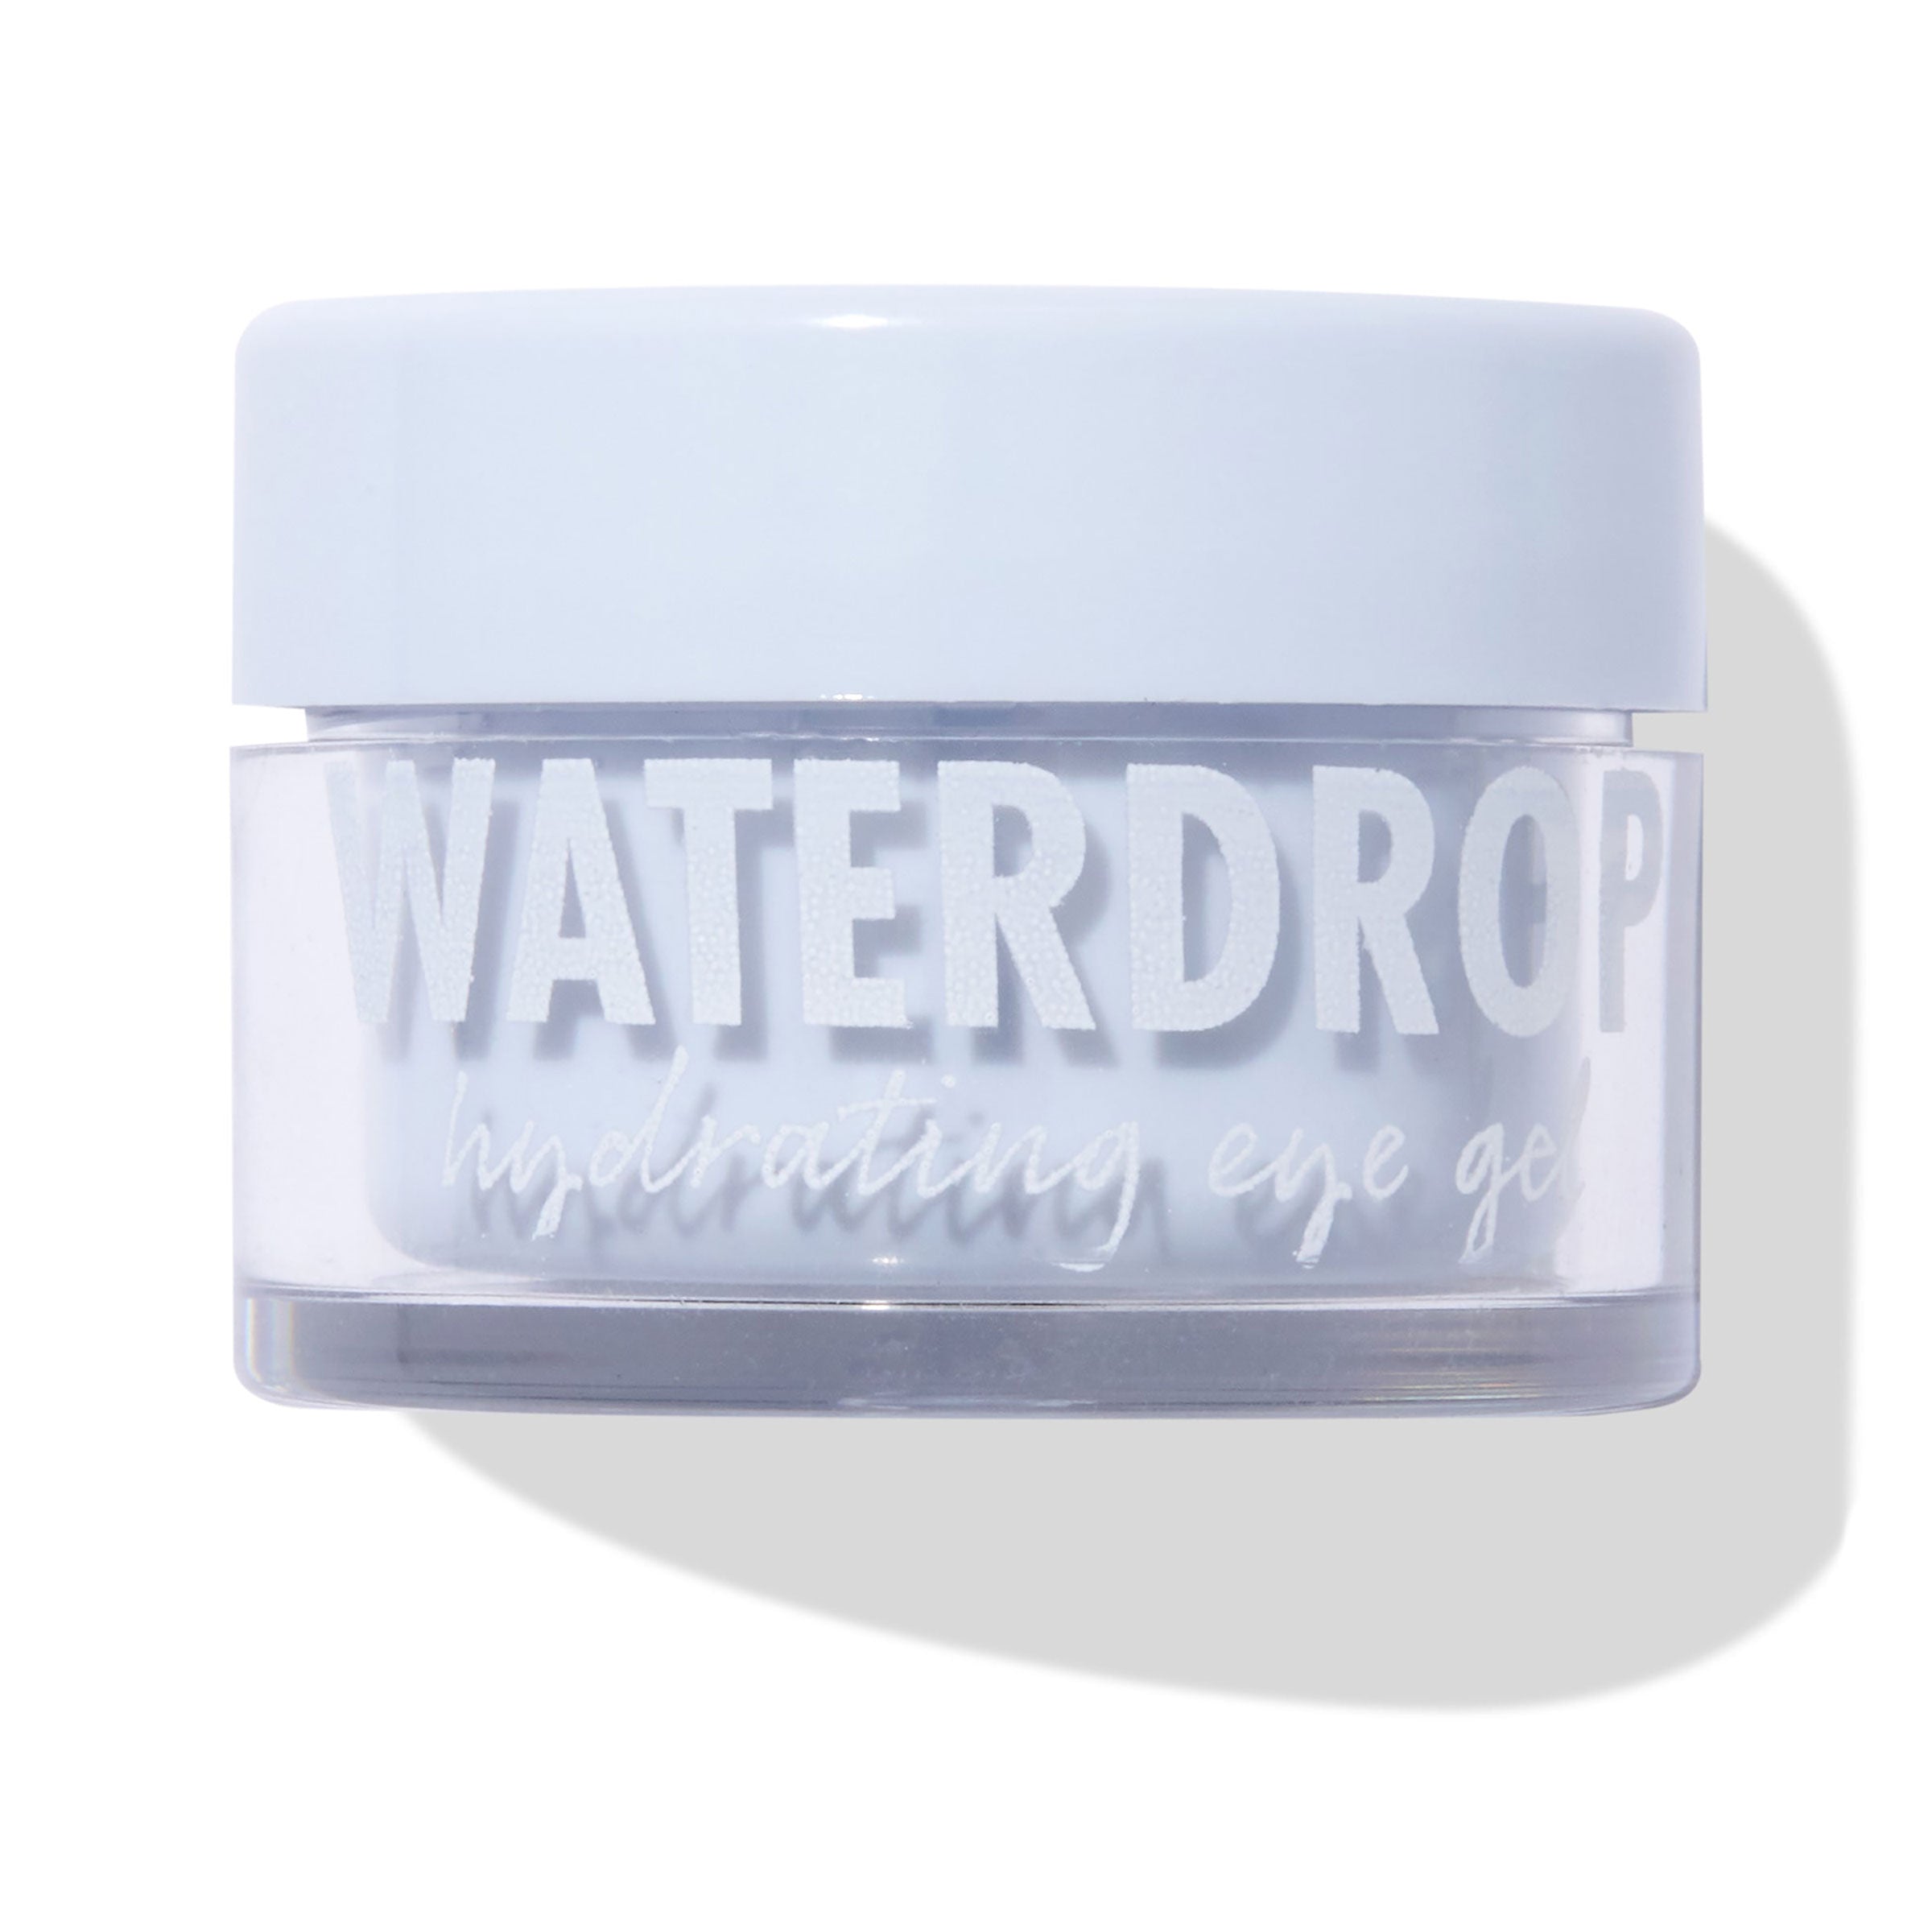 Fourth Ray Beauty Waterdrop hydrating eye gel